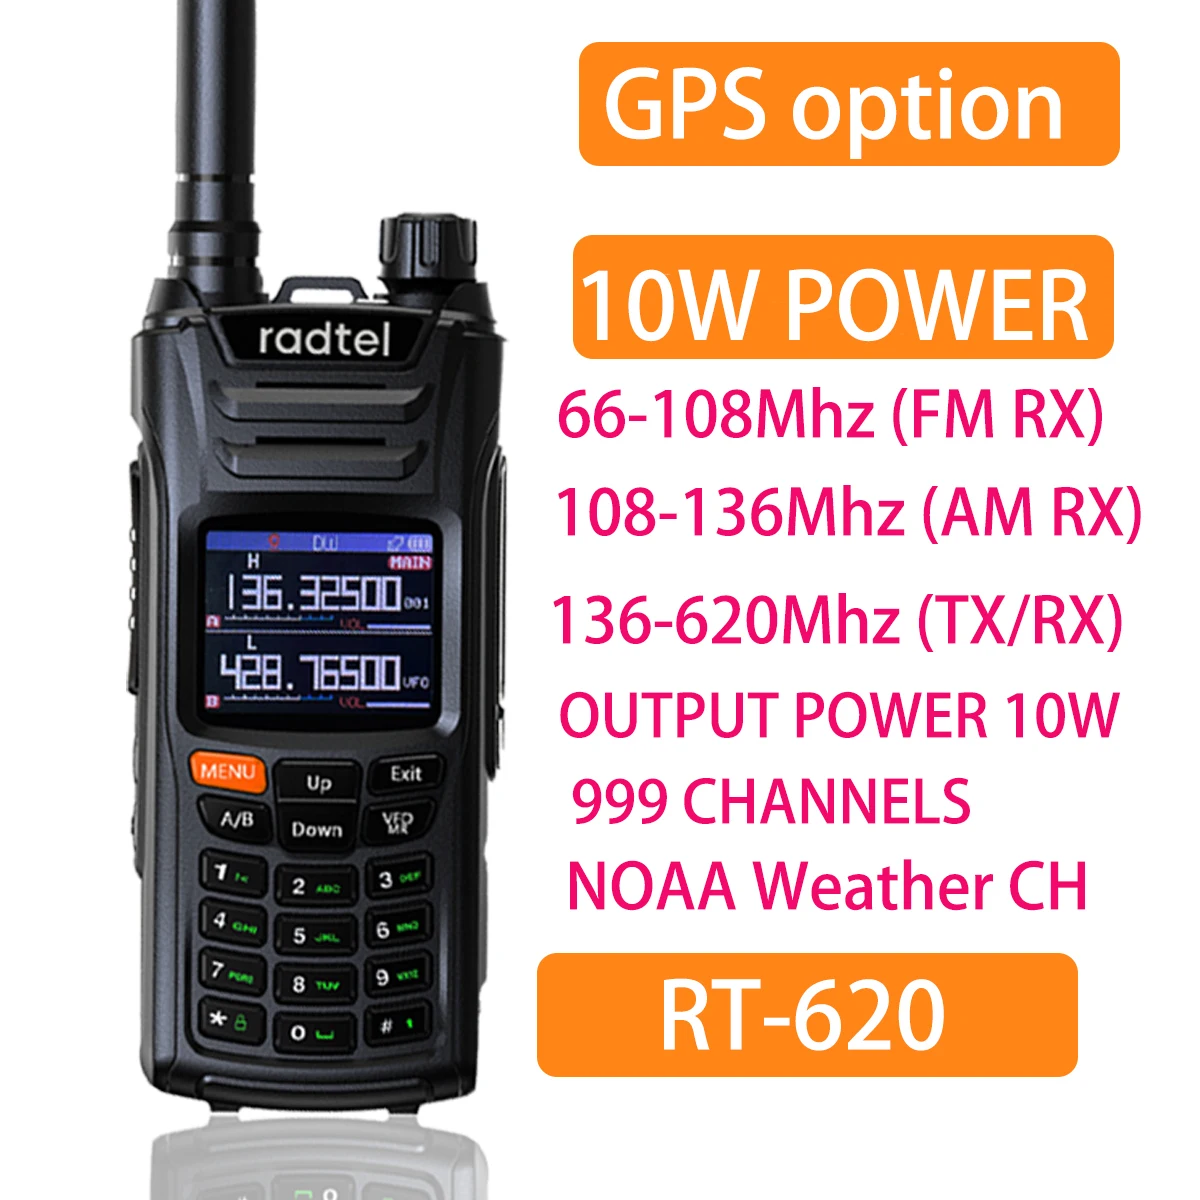 radtel-walkie-talkie-rt-620-con-gps-radio-bidireccional-amateur-de-10w-136-620mhz-banda-aerea-de-999ch-color-lcd-policia-aviacion